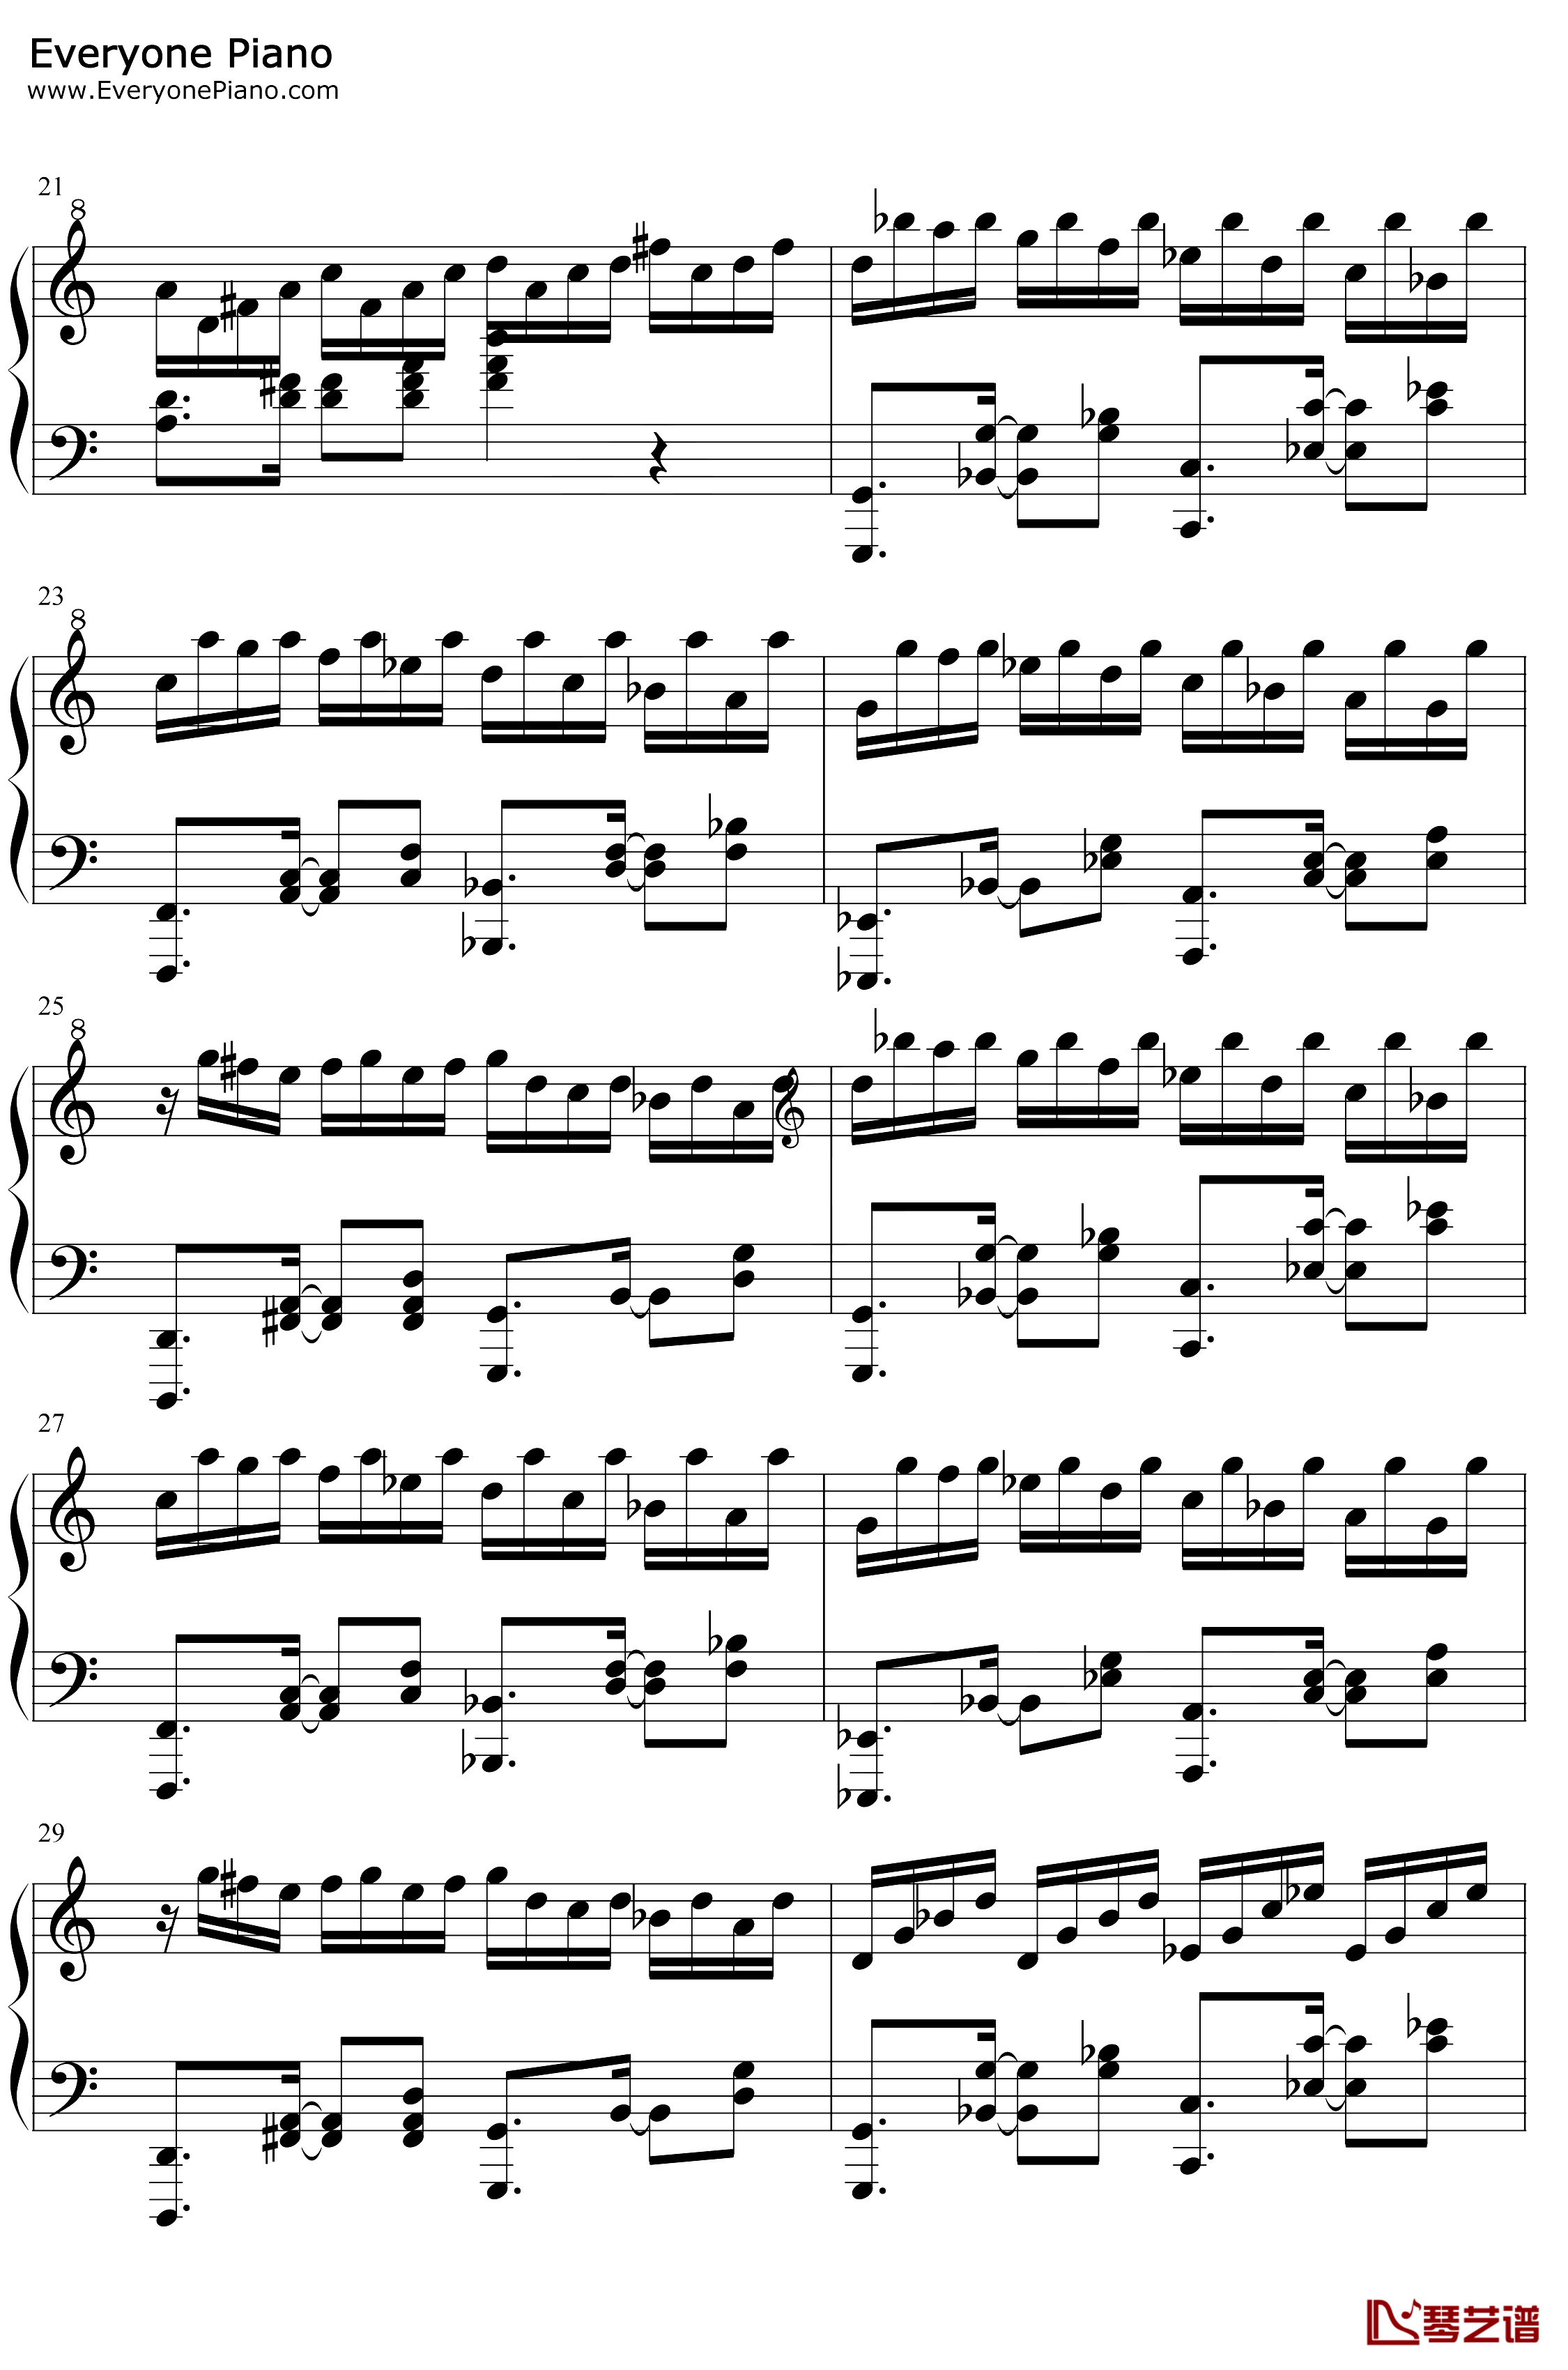 帕萨卡利亚克罗地亚变奏钢琴谱-Handel Mrvica-帕萨卡利亚克罗地亚变奏3